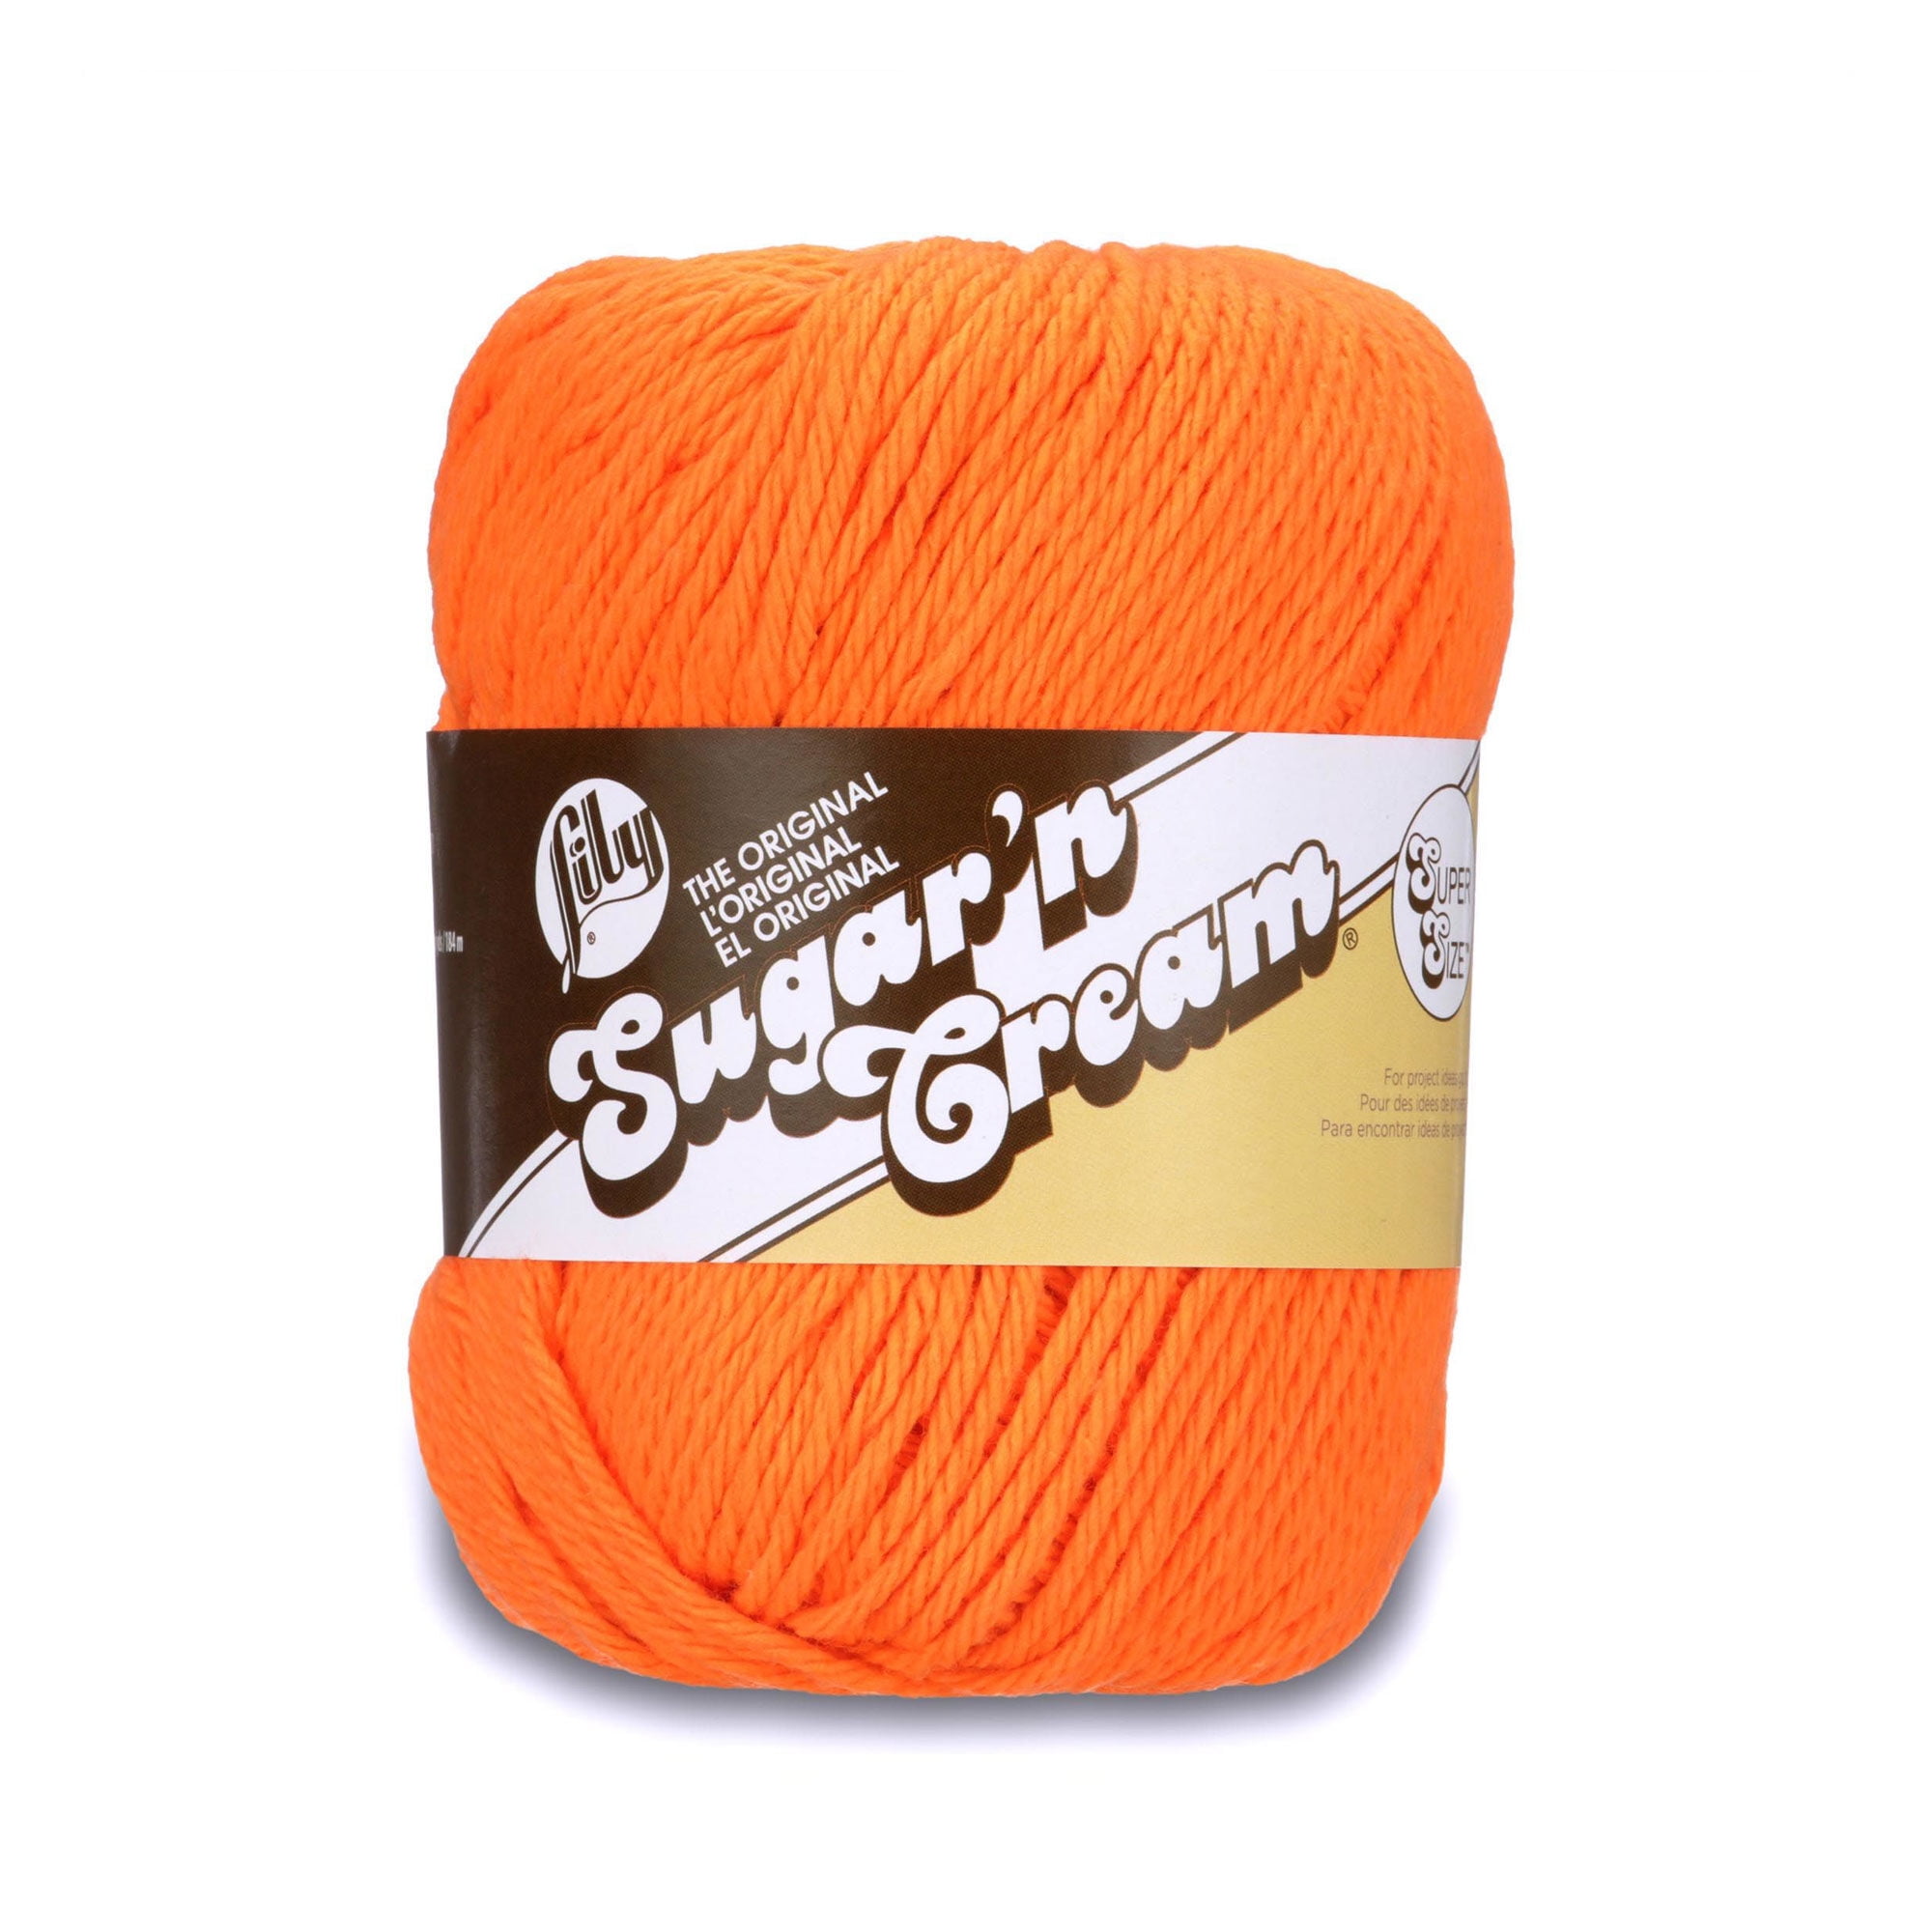 Lily Sugar 'N Cream Super Size Yarn 100% Cotton 4 oz Hot Green